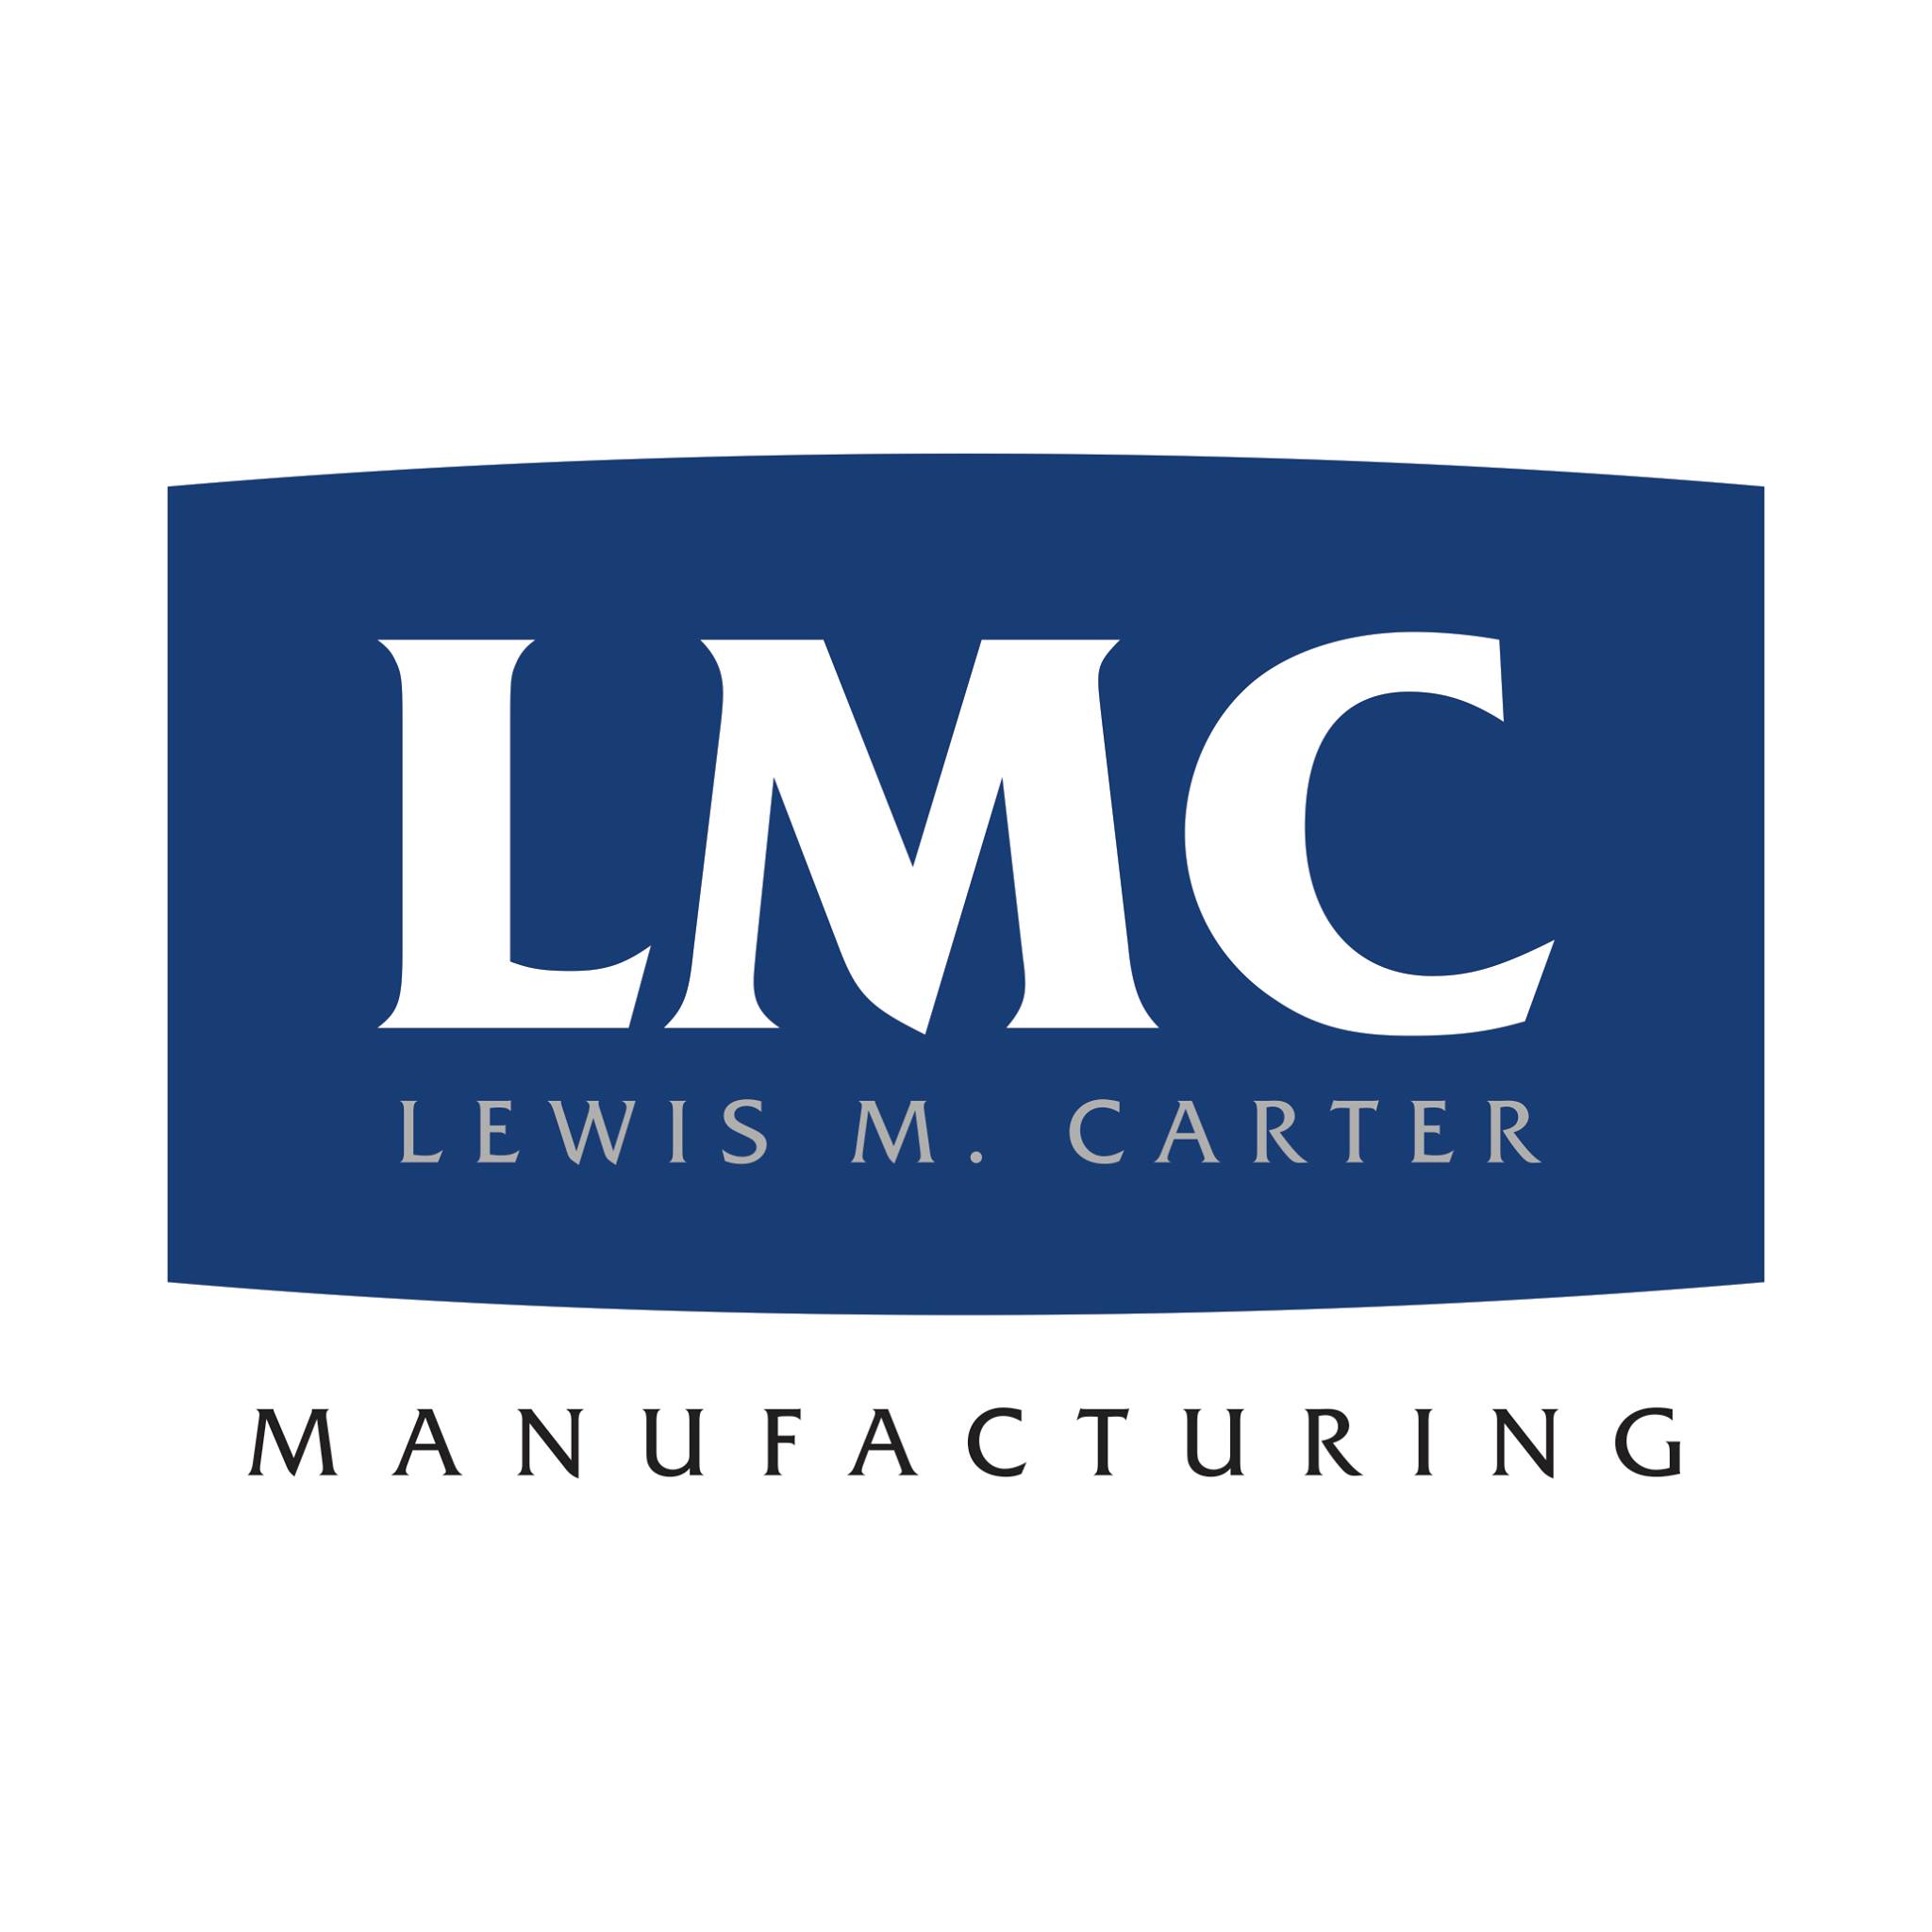 Lewis M. Carter Manufacturing